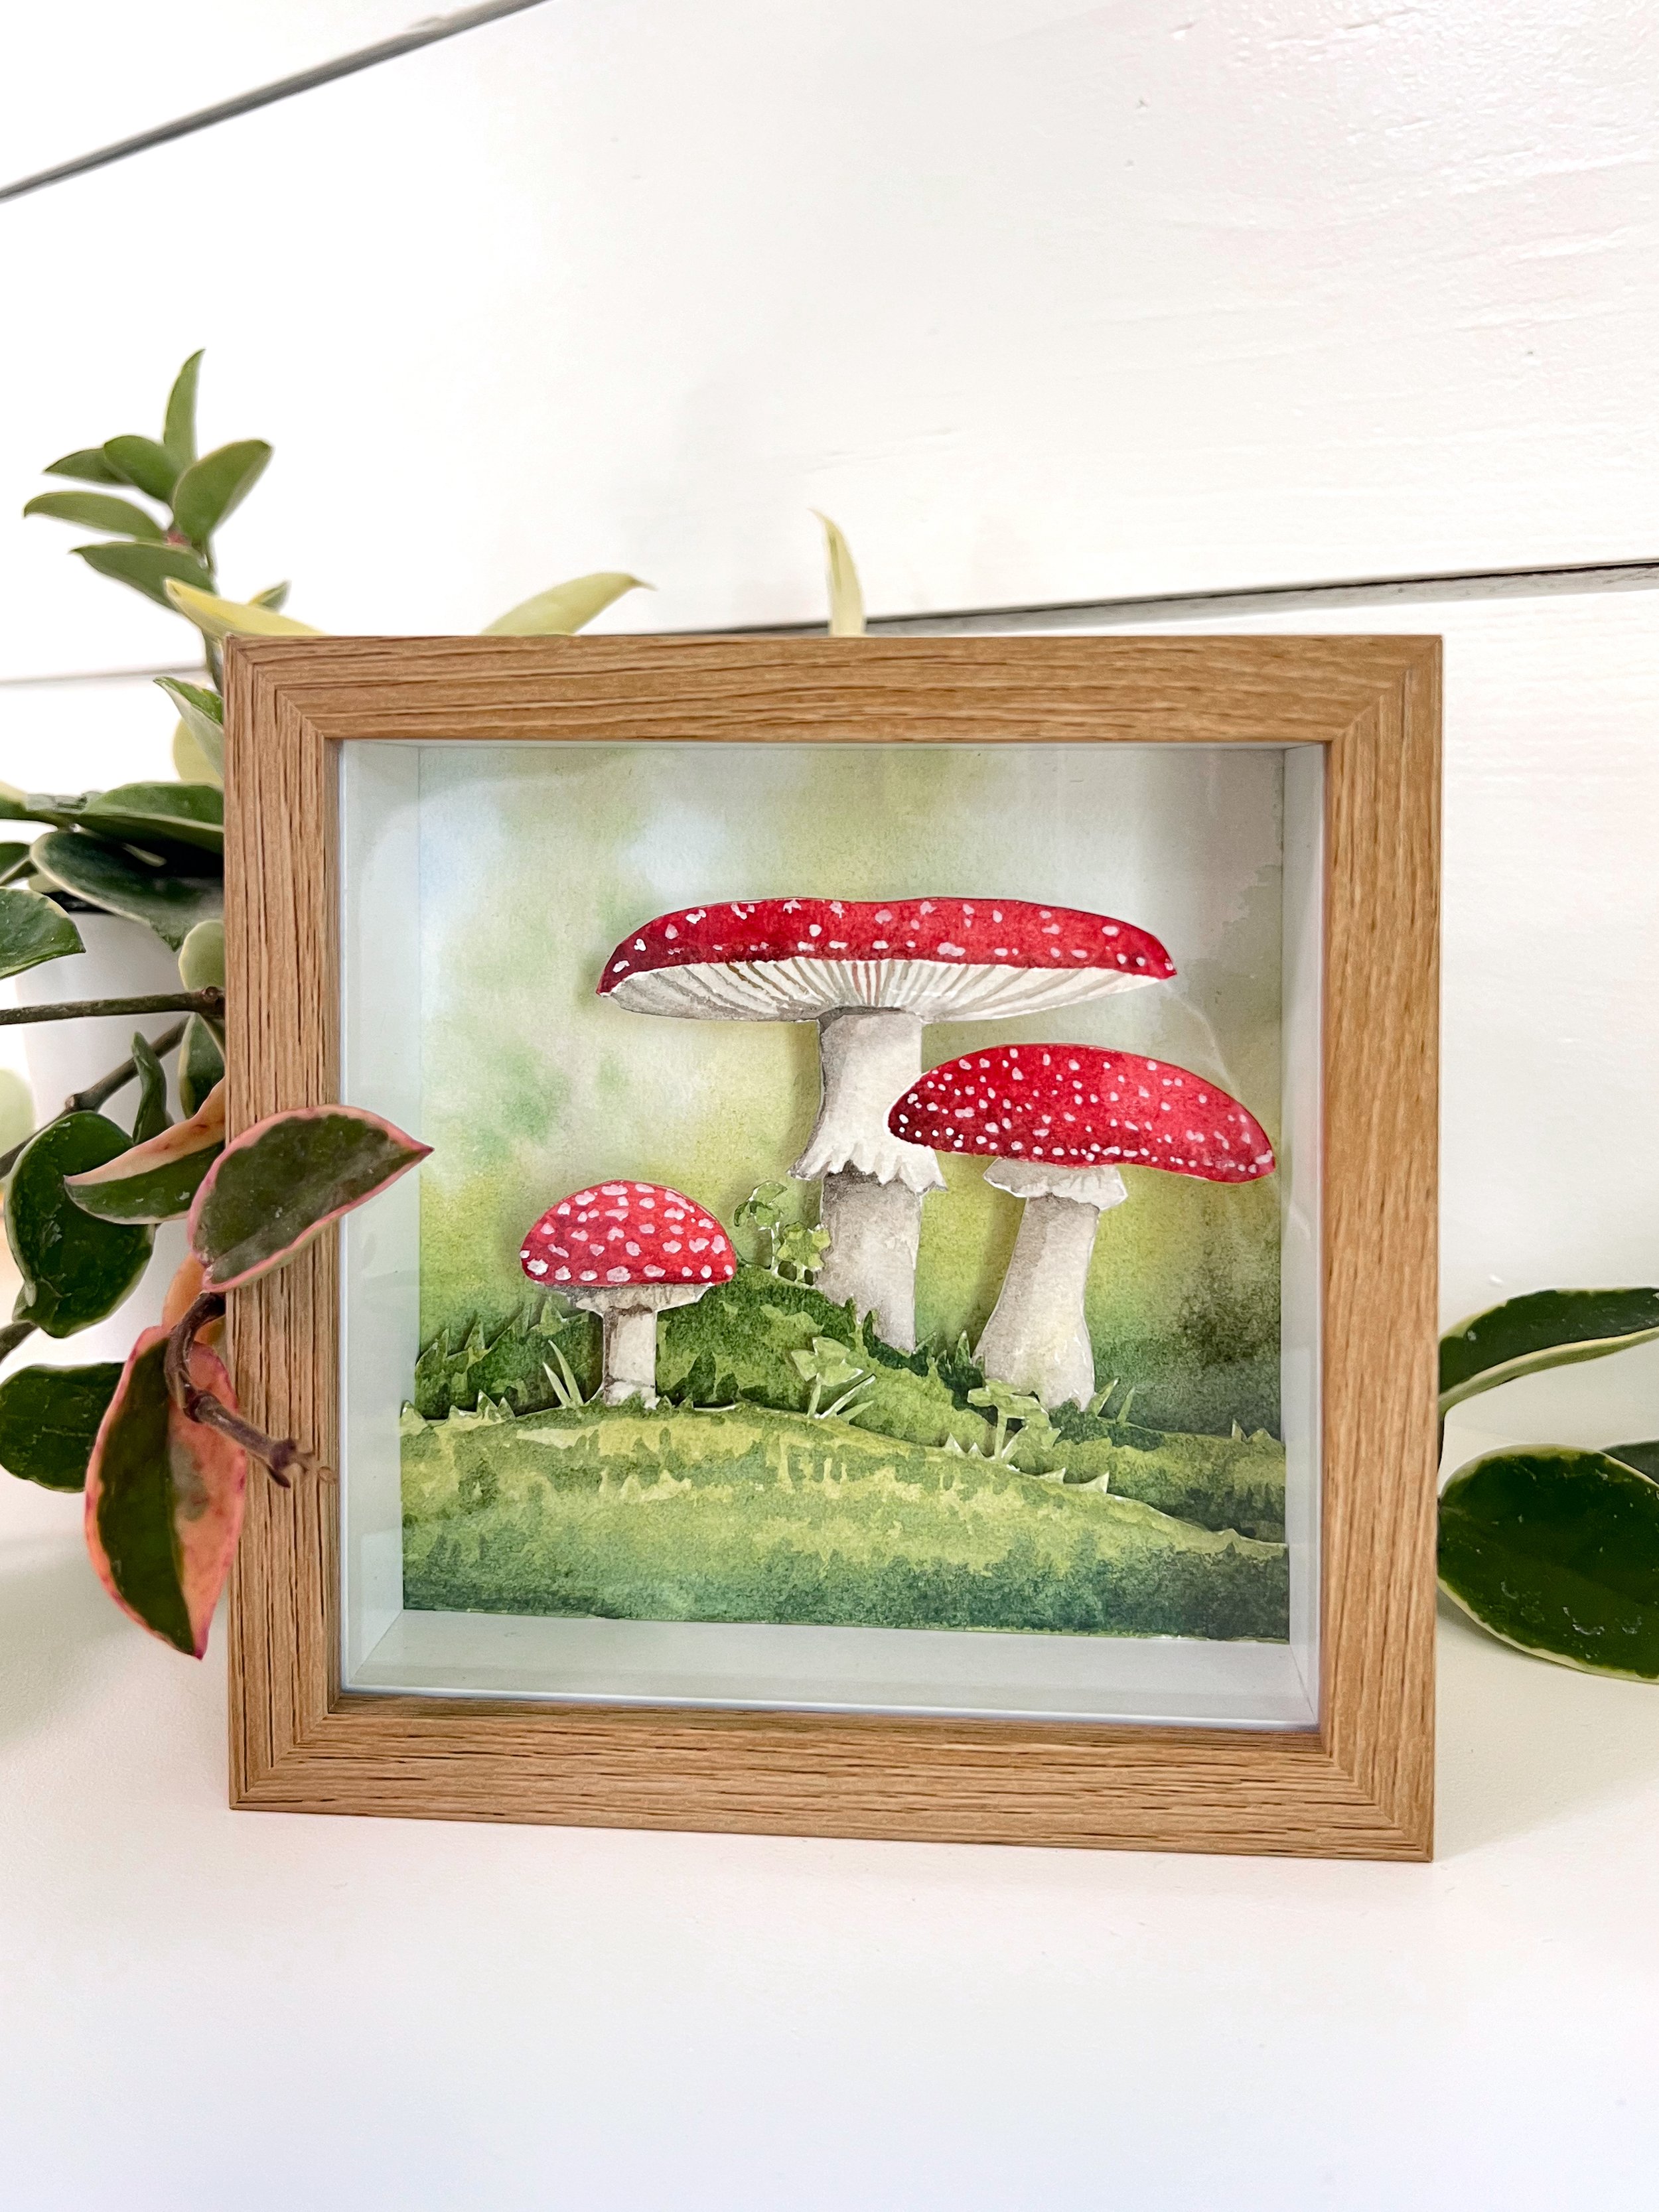 Mushroom Diorama wkshp 1.jpg